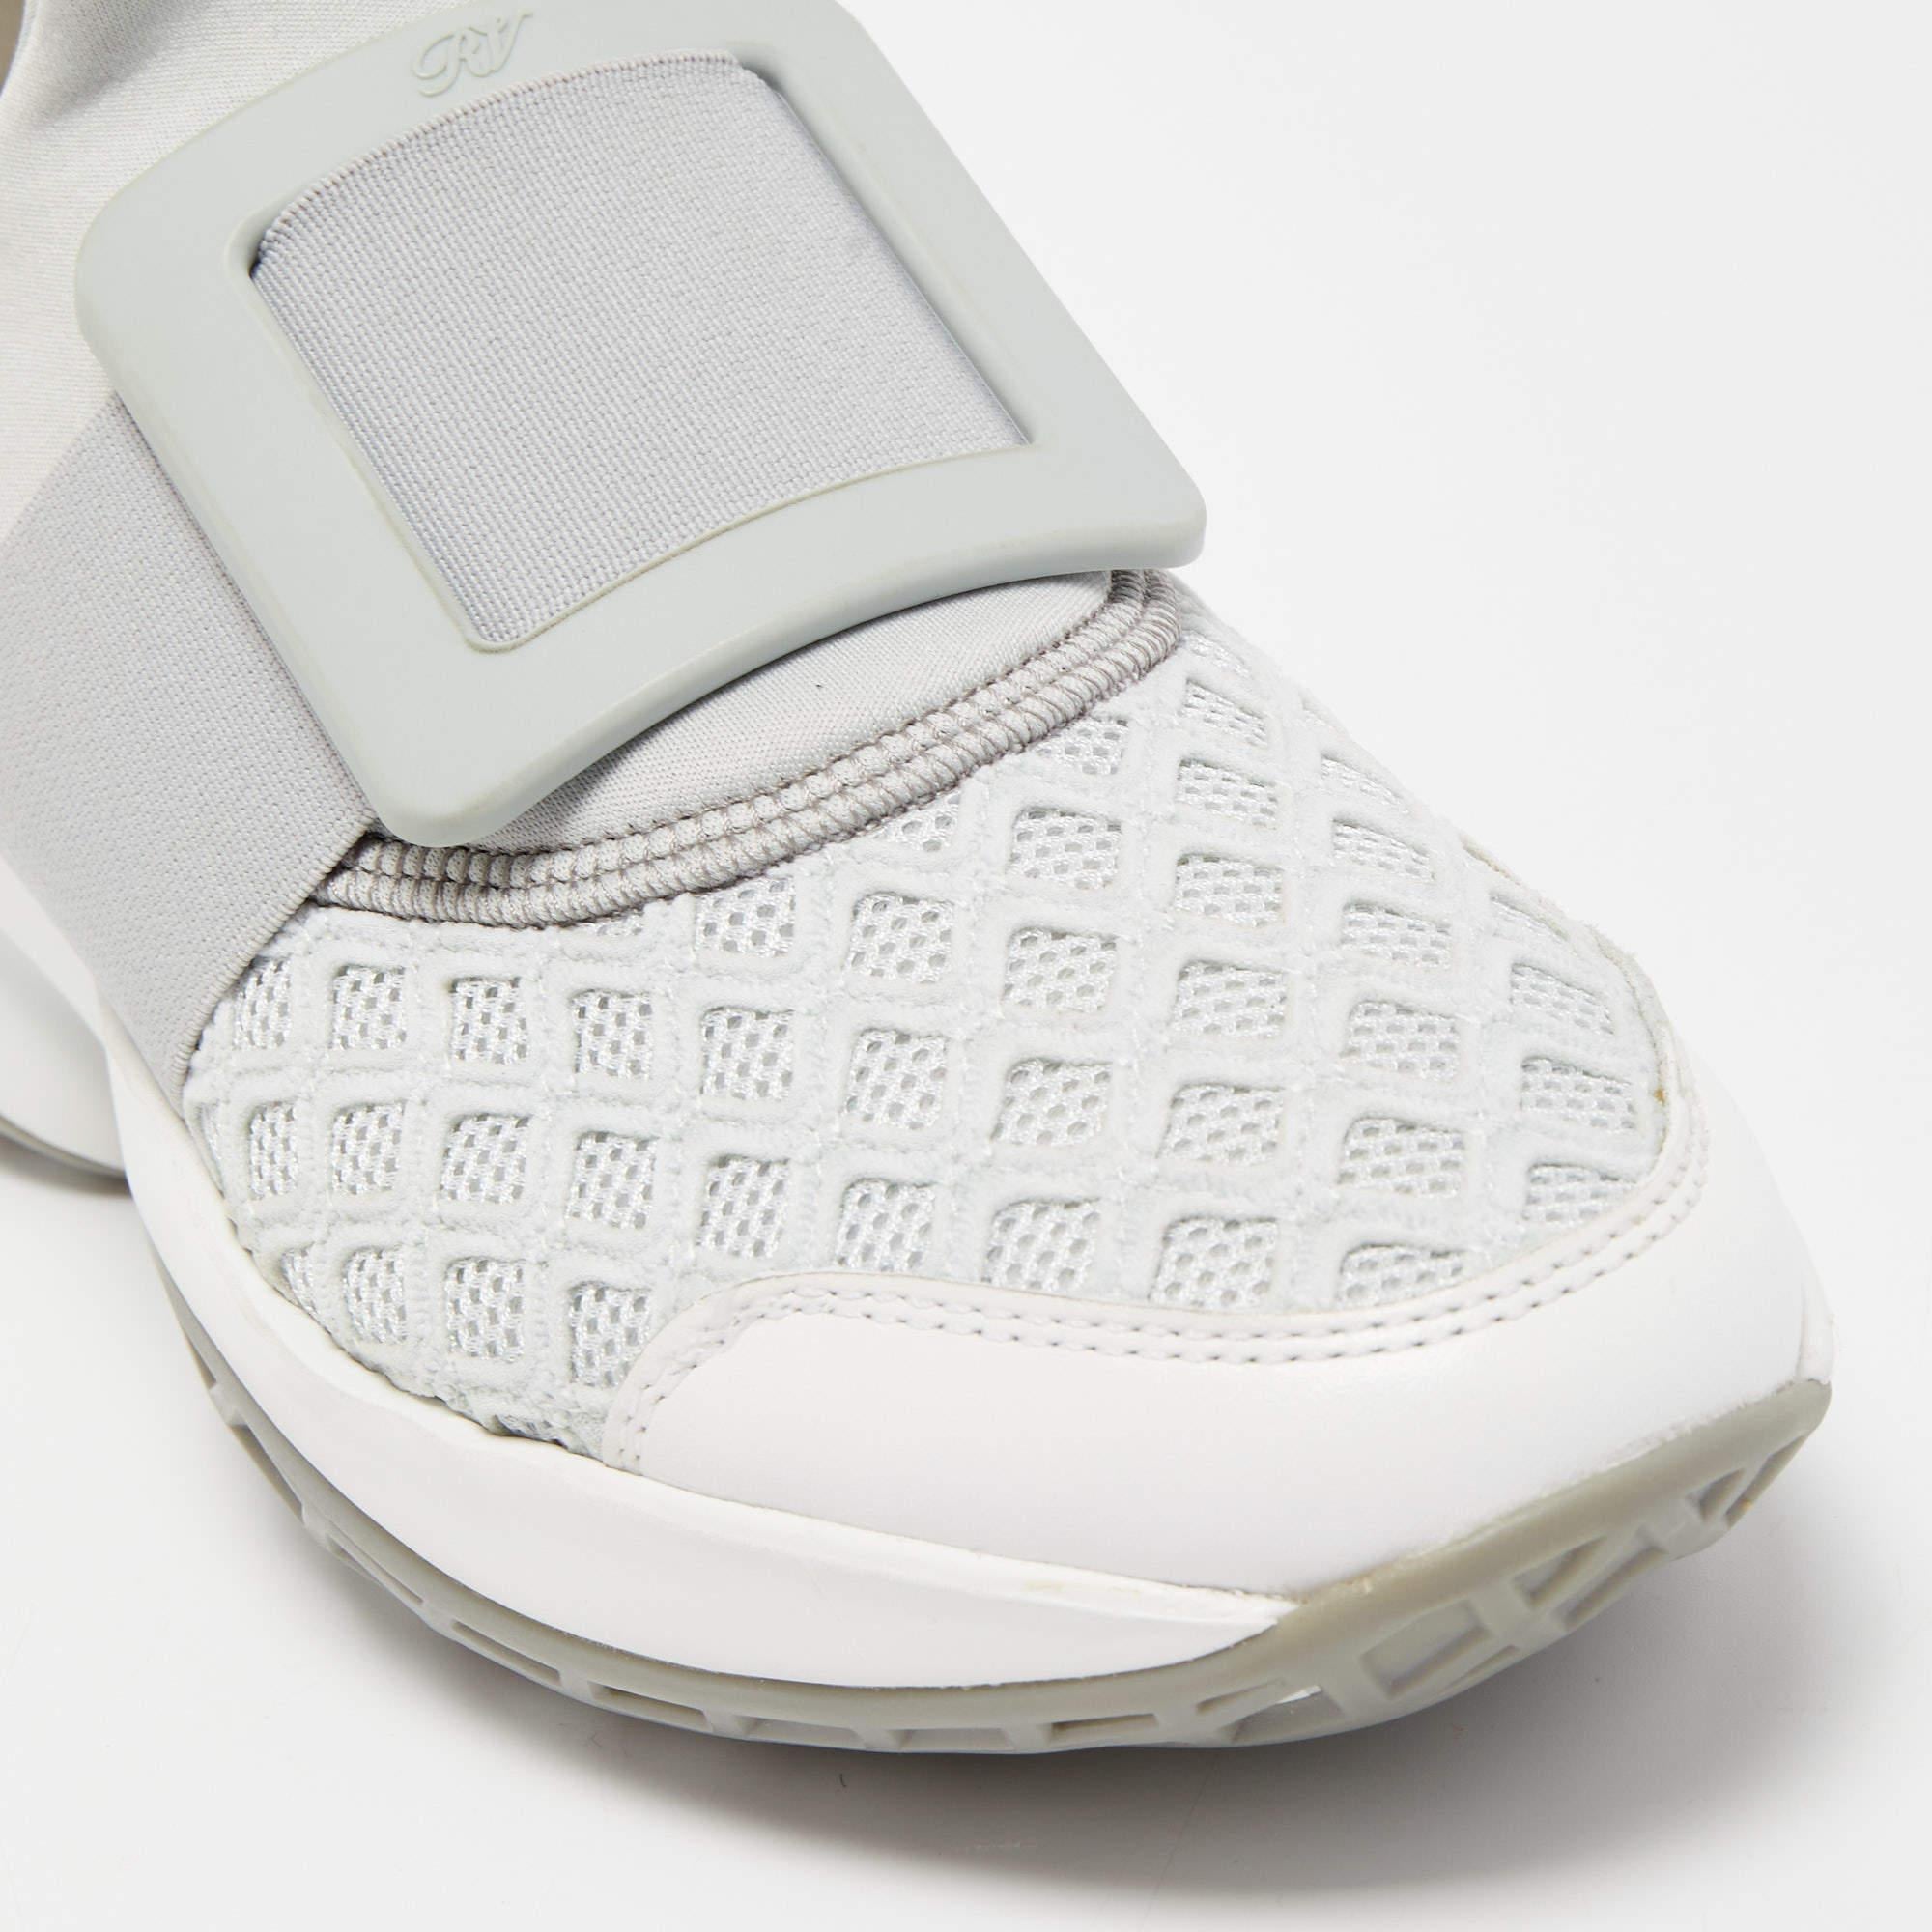 Roger Vivier Grey/White Mesh and Neoprene Viv Run Sneakers Size 37 4